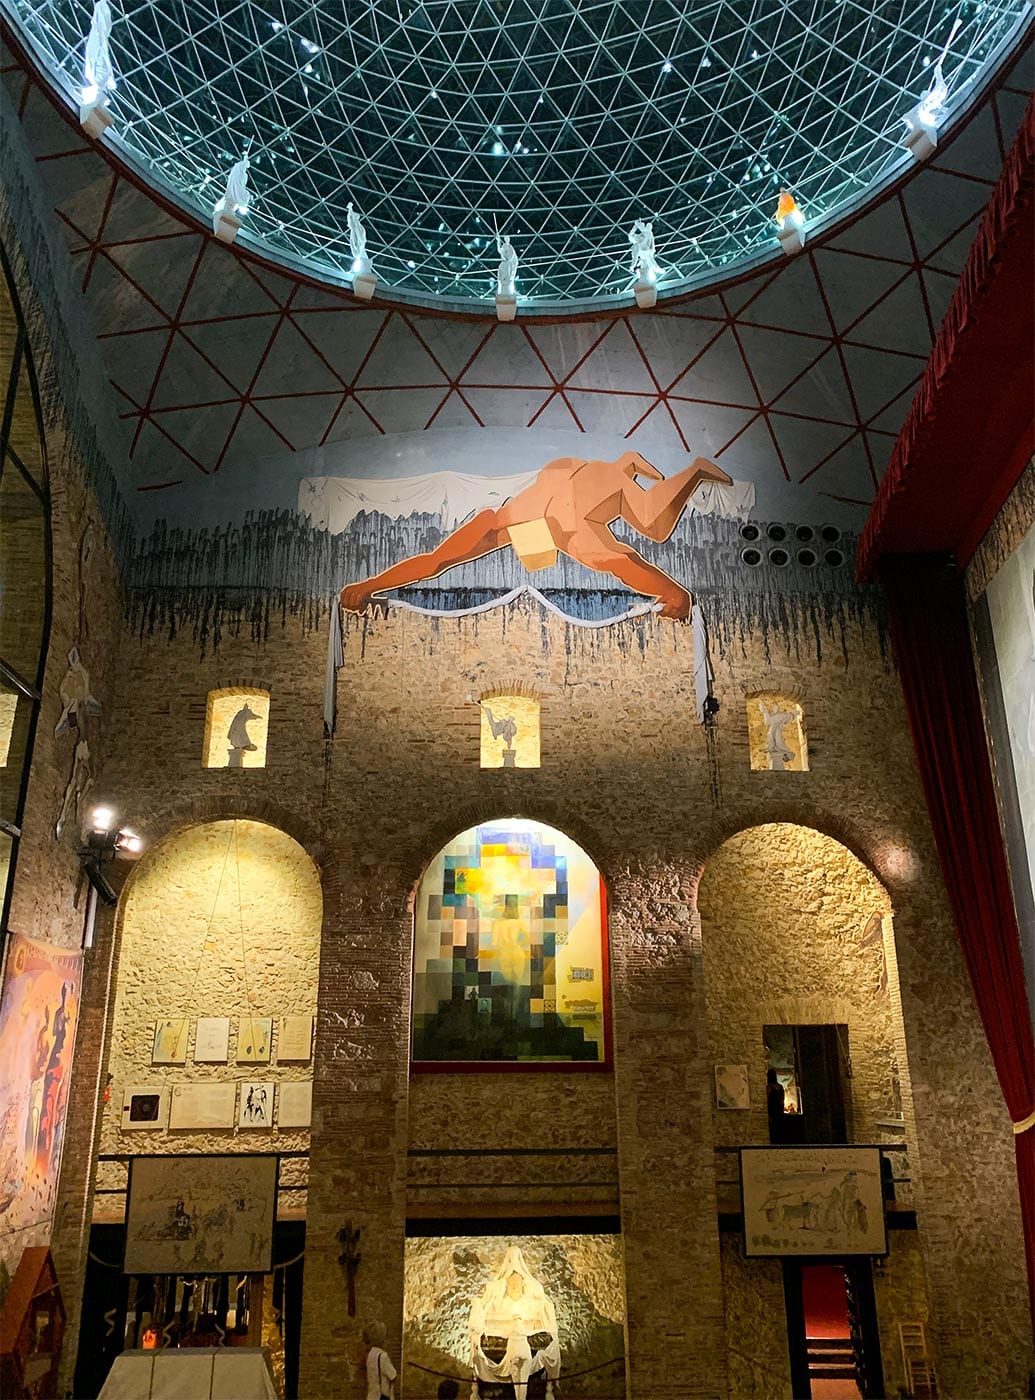 Théâtre-Musée Dalí, Figueres, catalogne, la Costa Brava surréaliste, le grand triangle de Dalí